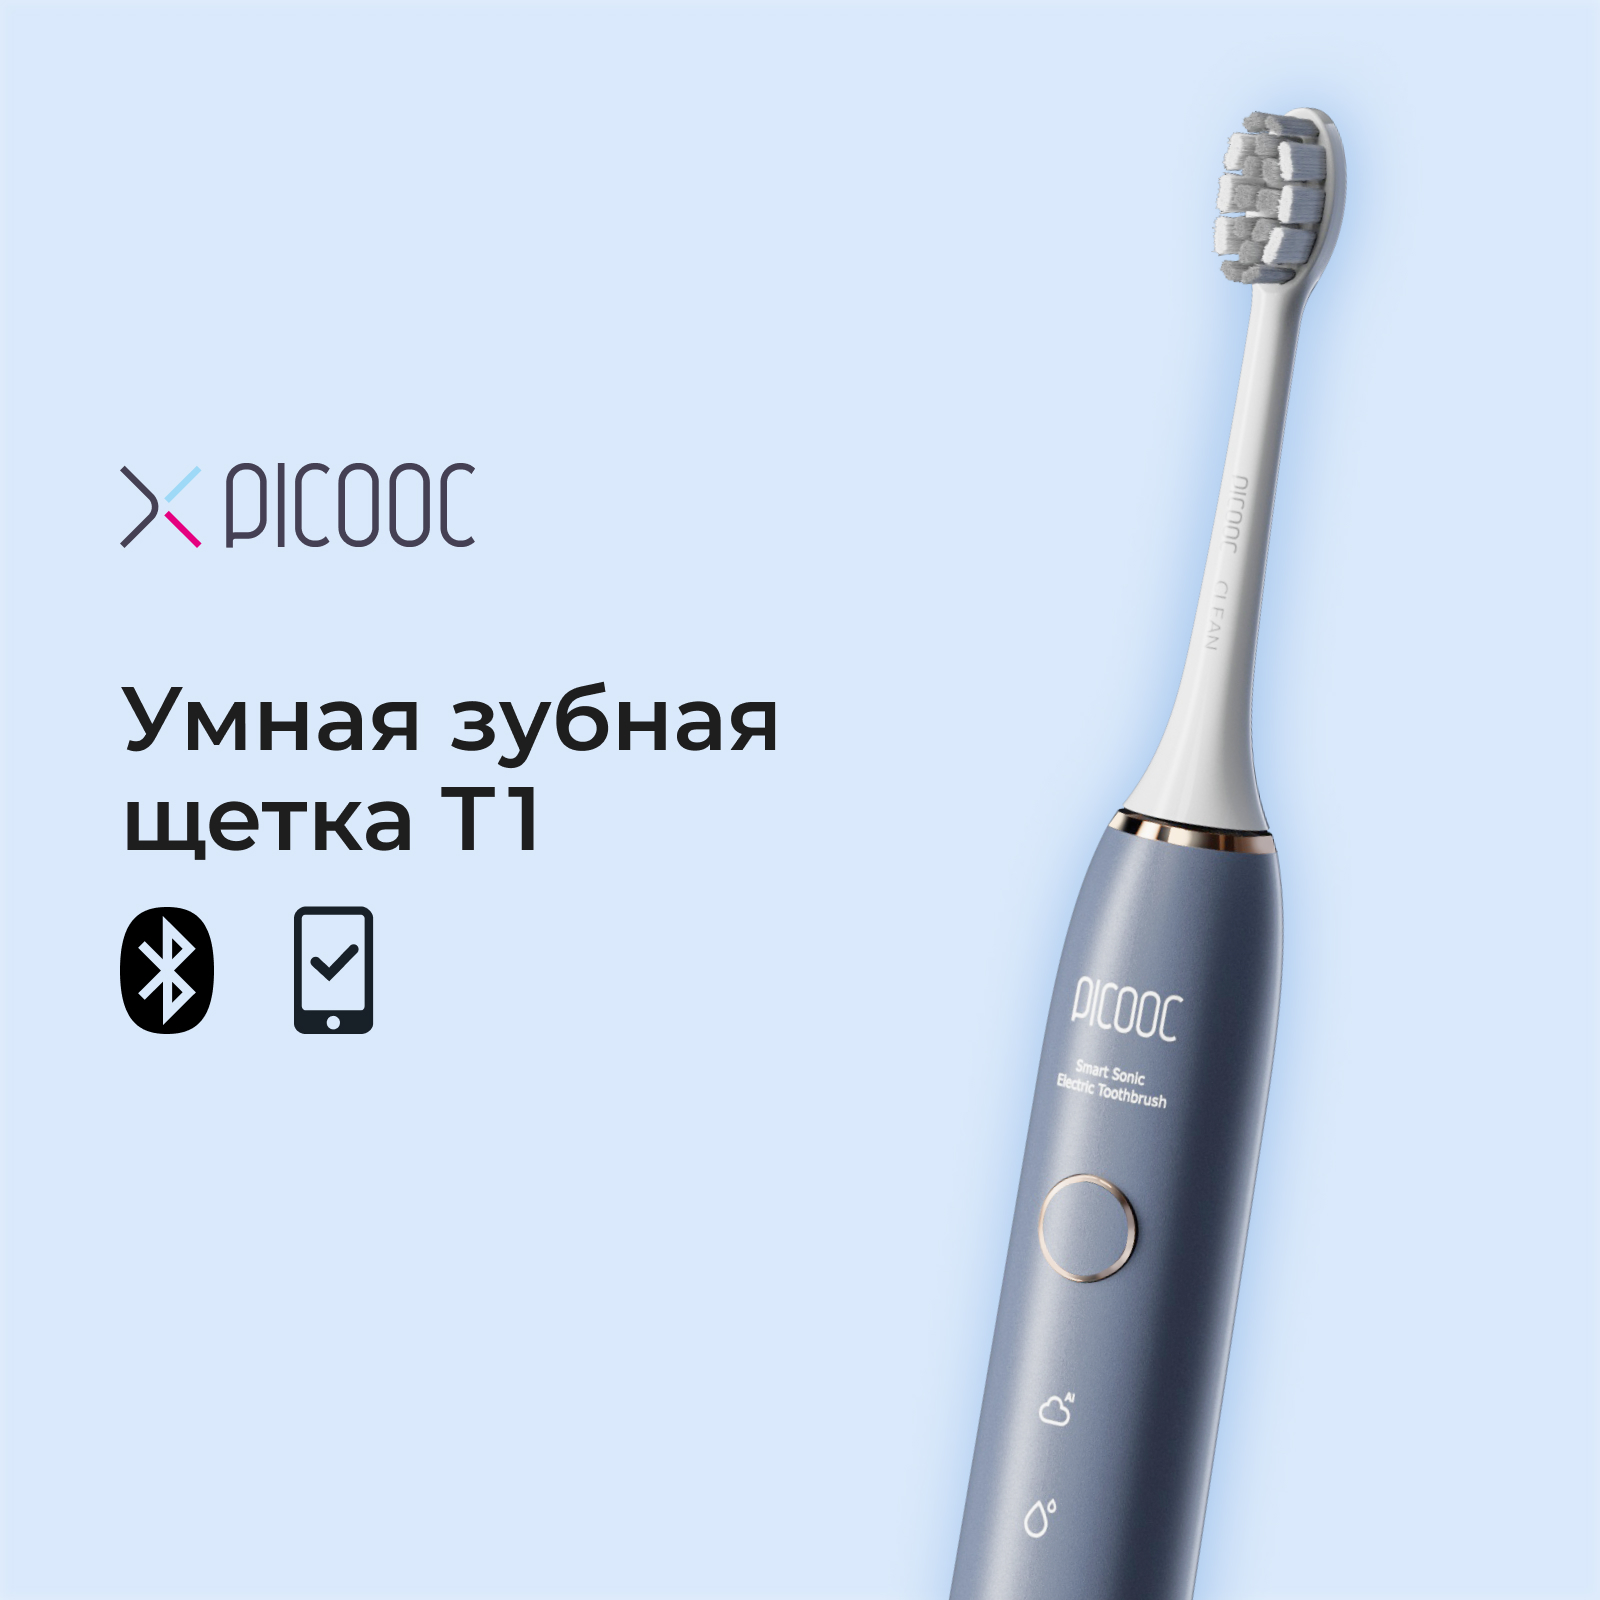 Электрическая зубная щетка Picooc T1 синяя